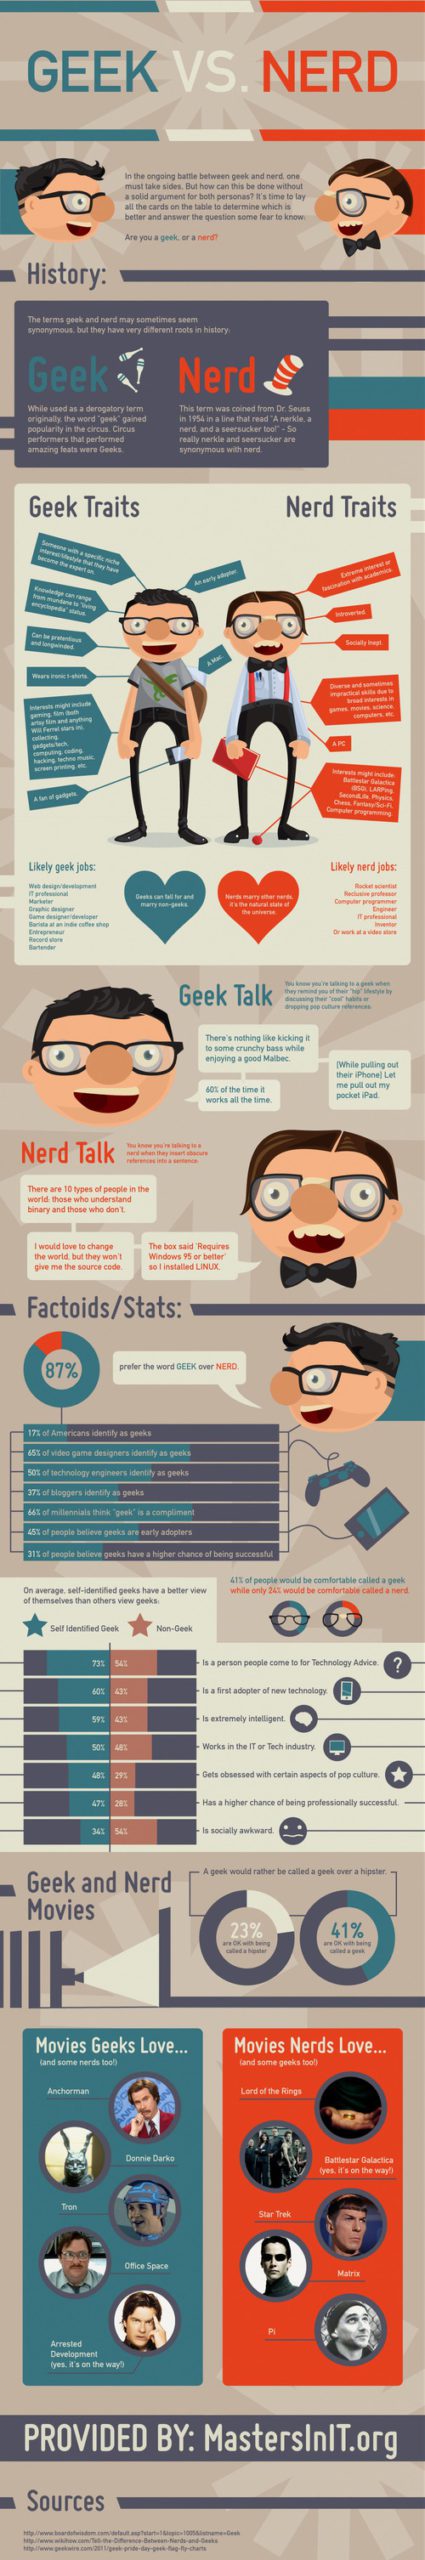 Geek vs. Nerd: The Infographic